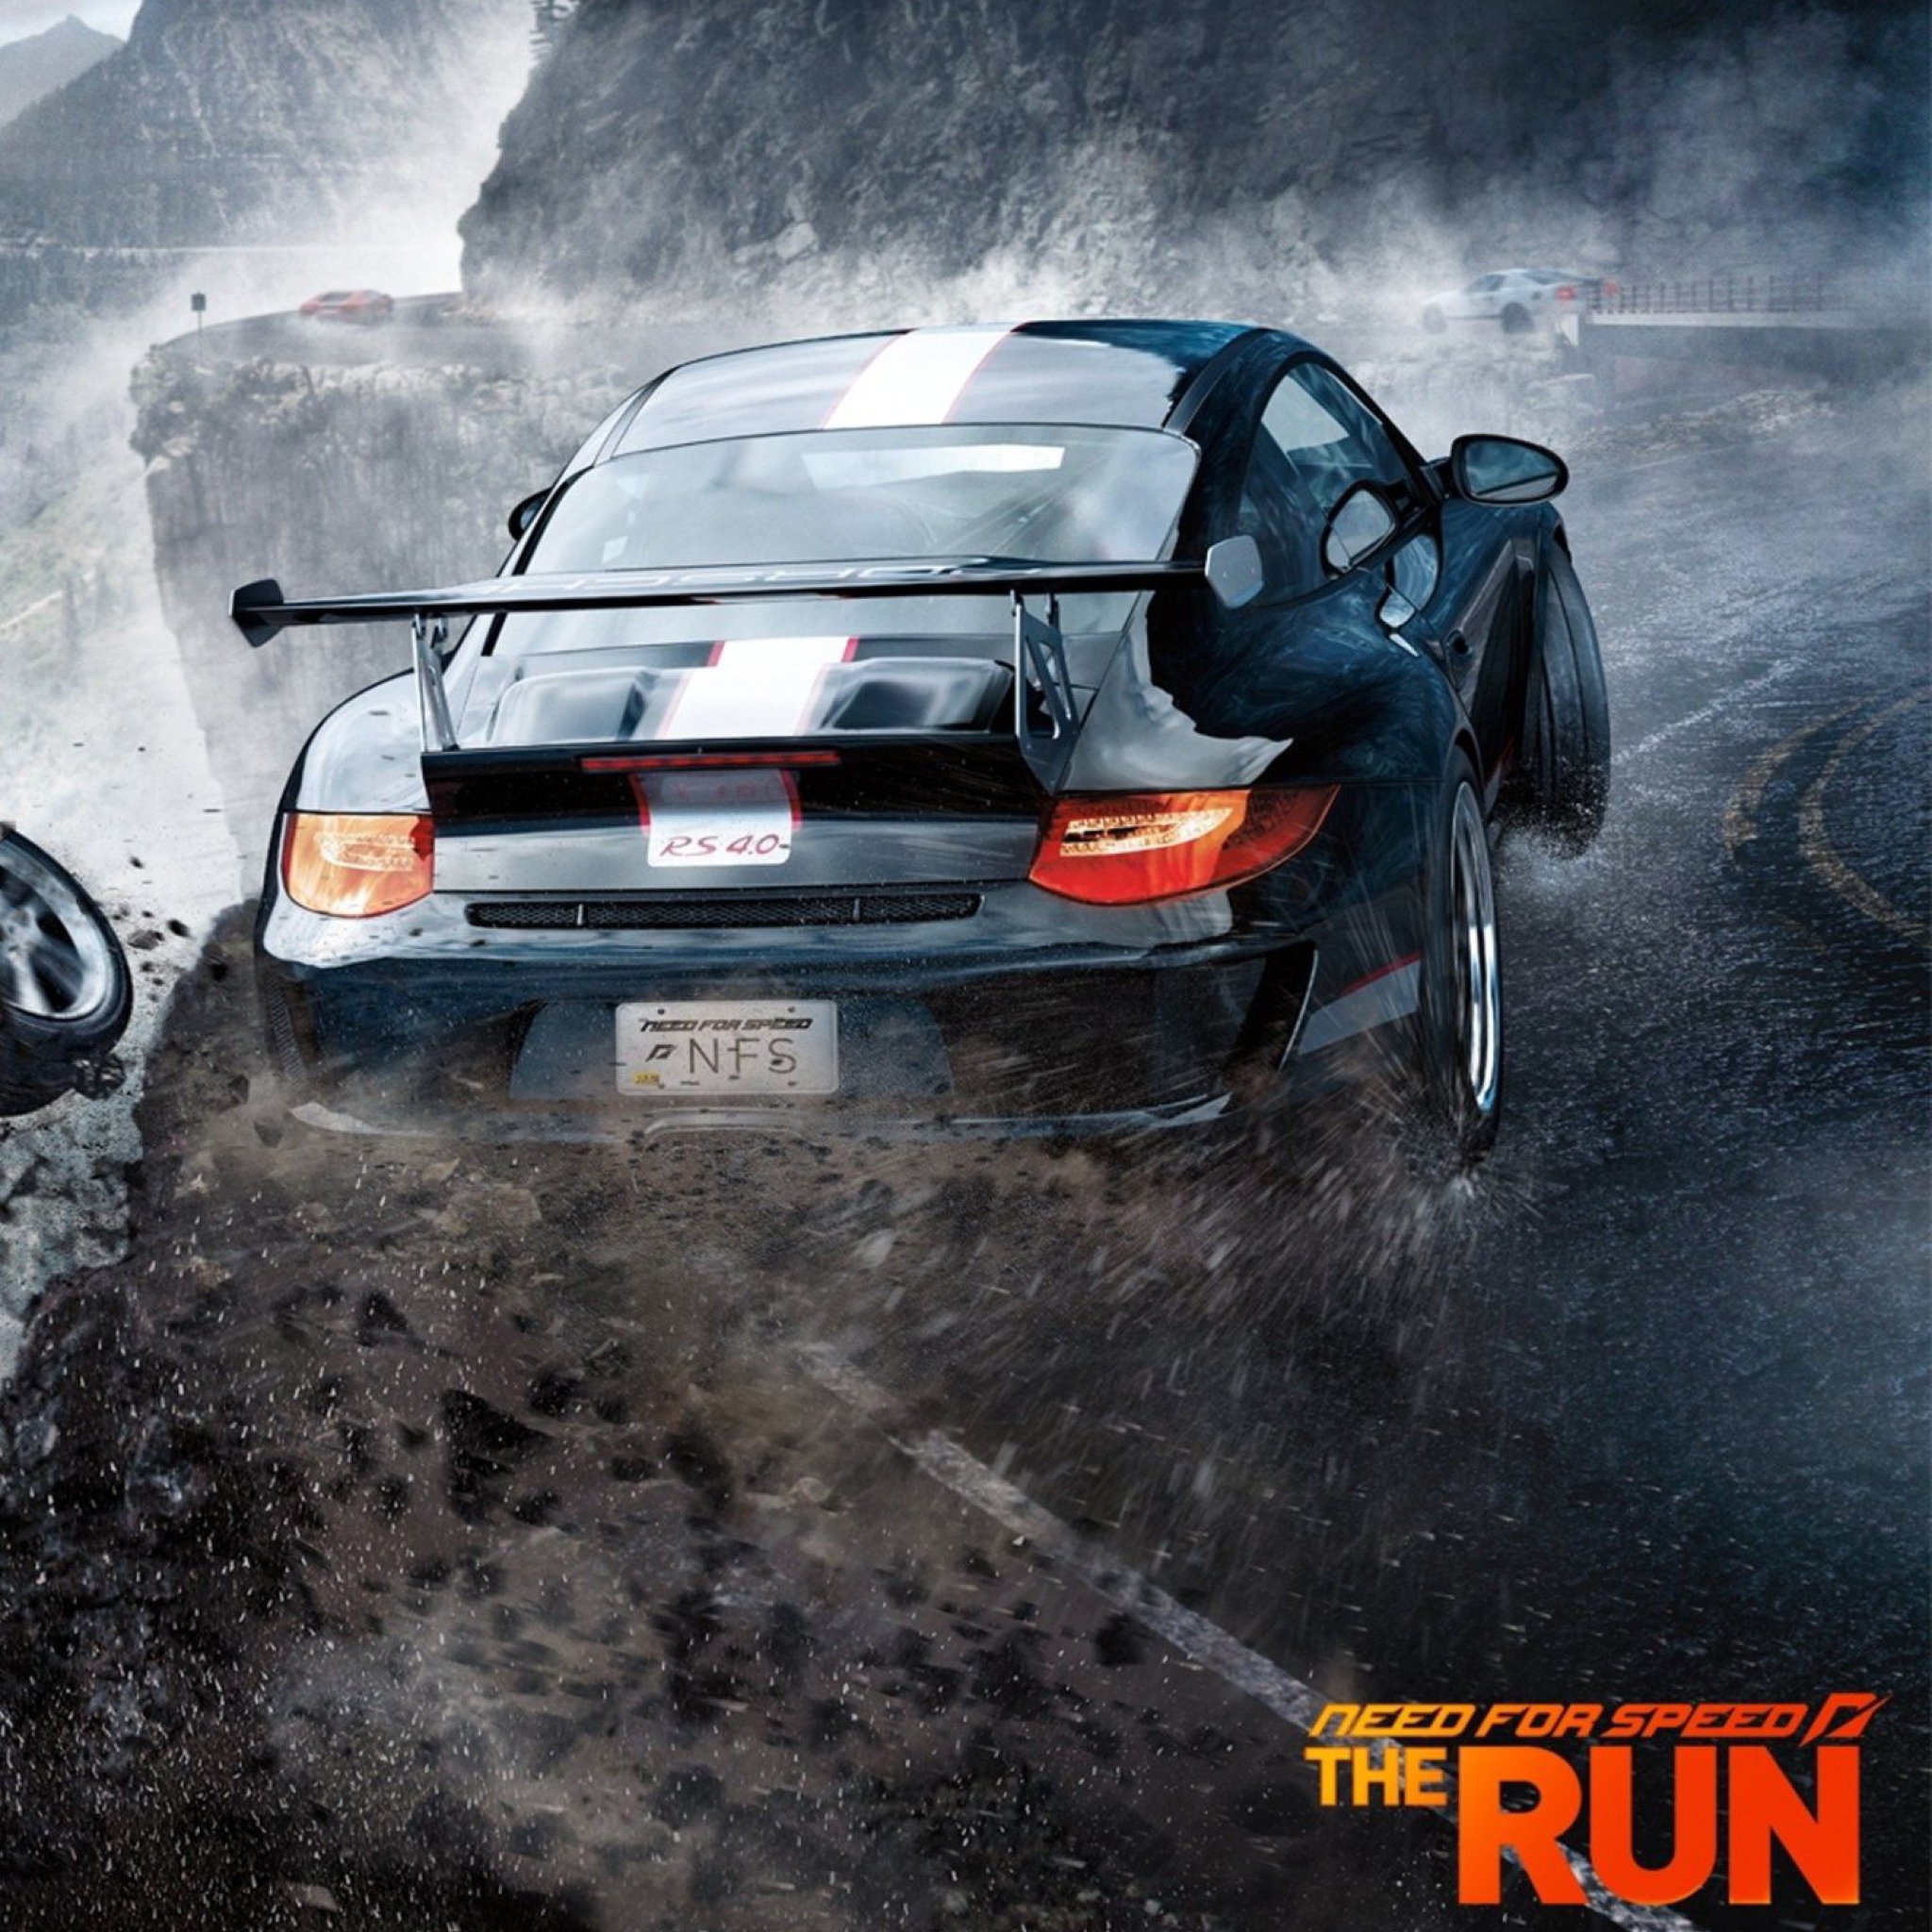 Sfondi Need For Speed The Run 2048x2048